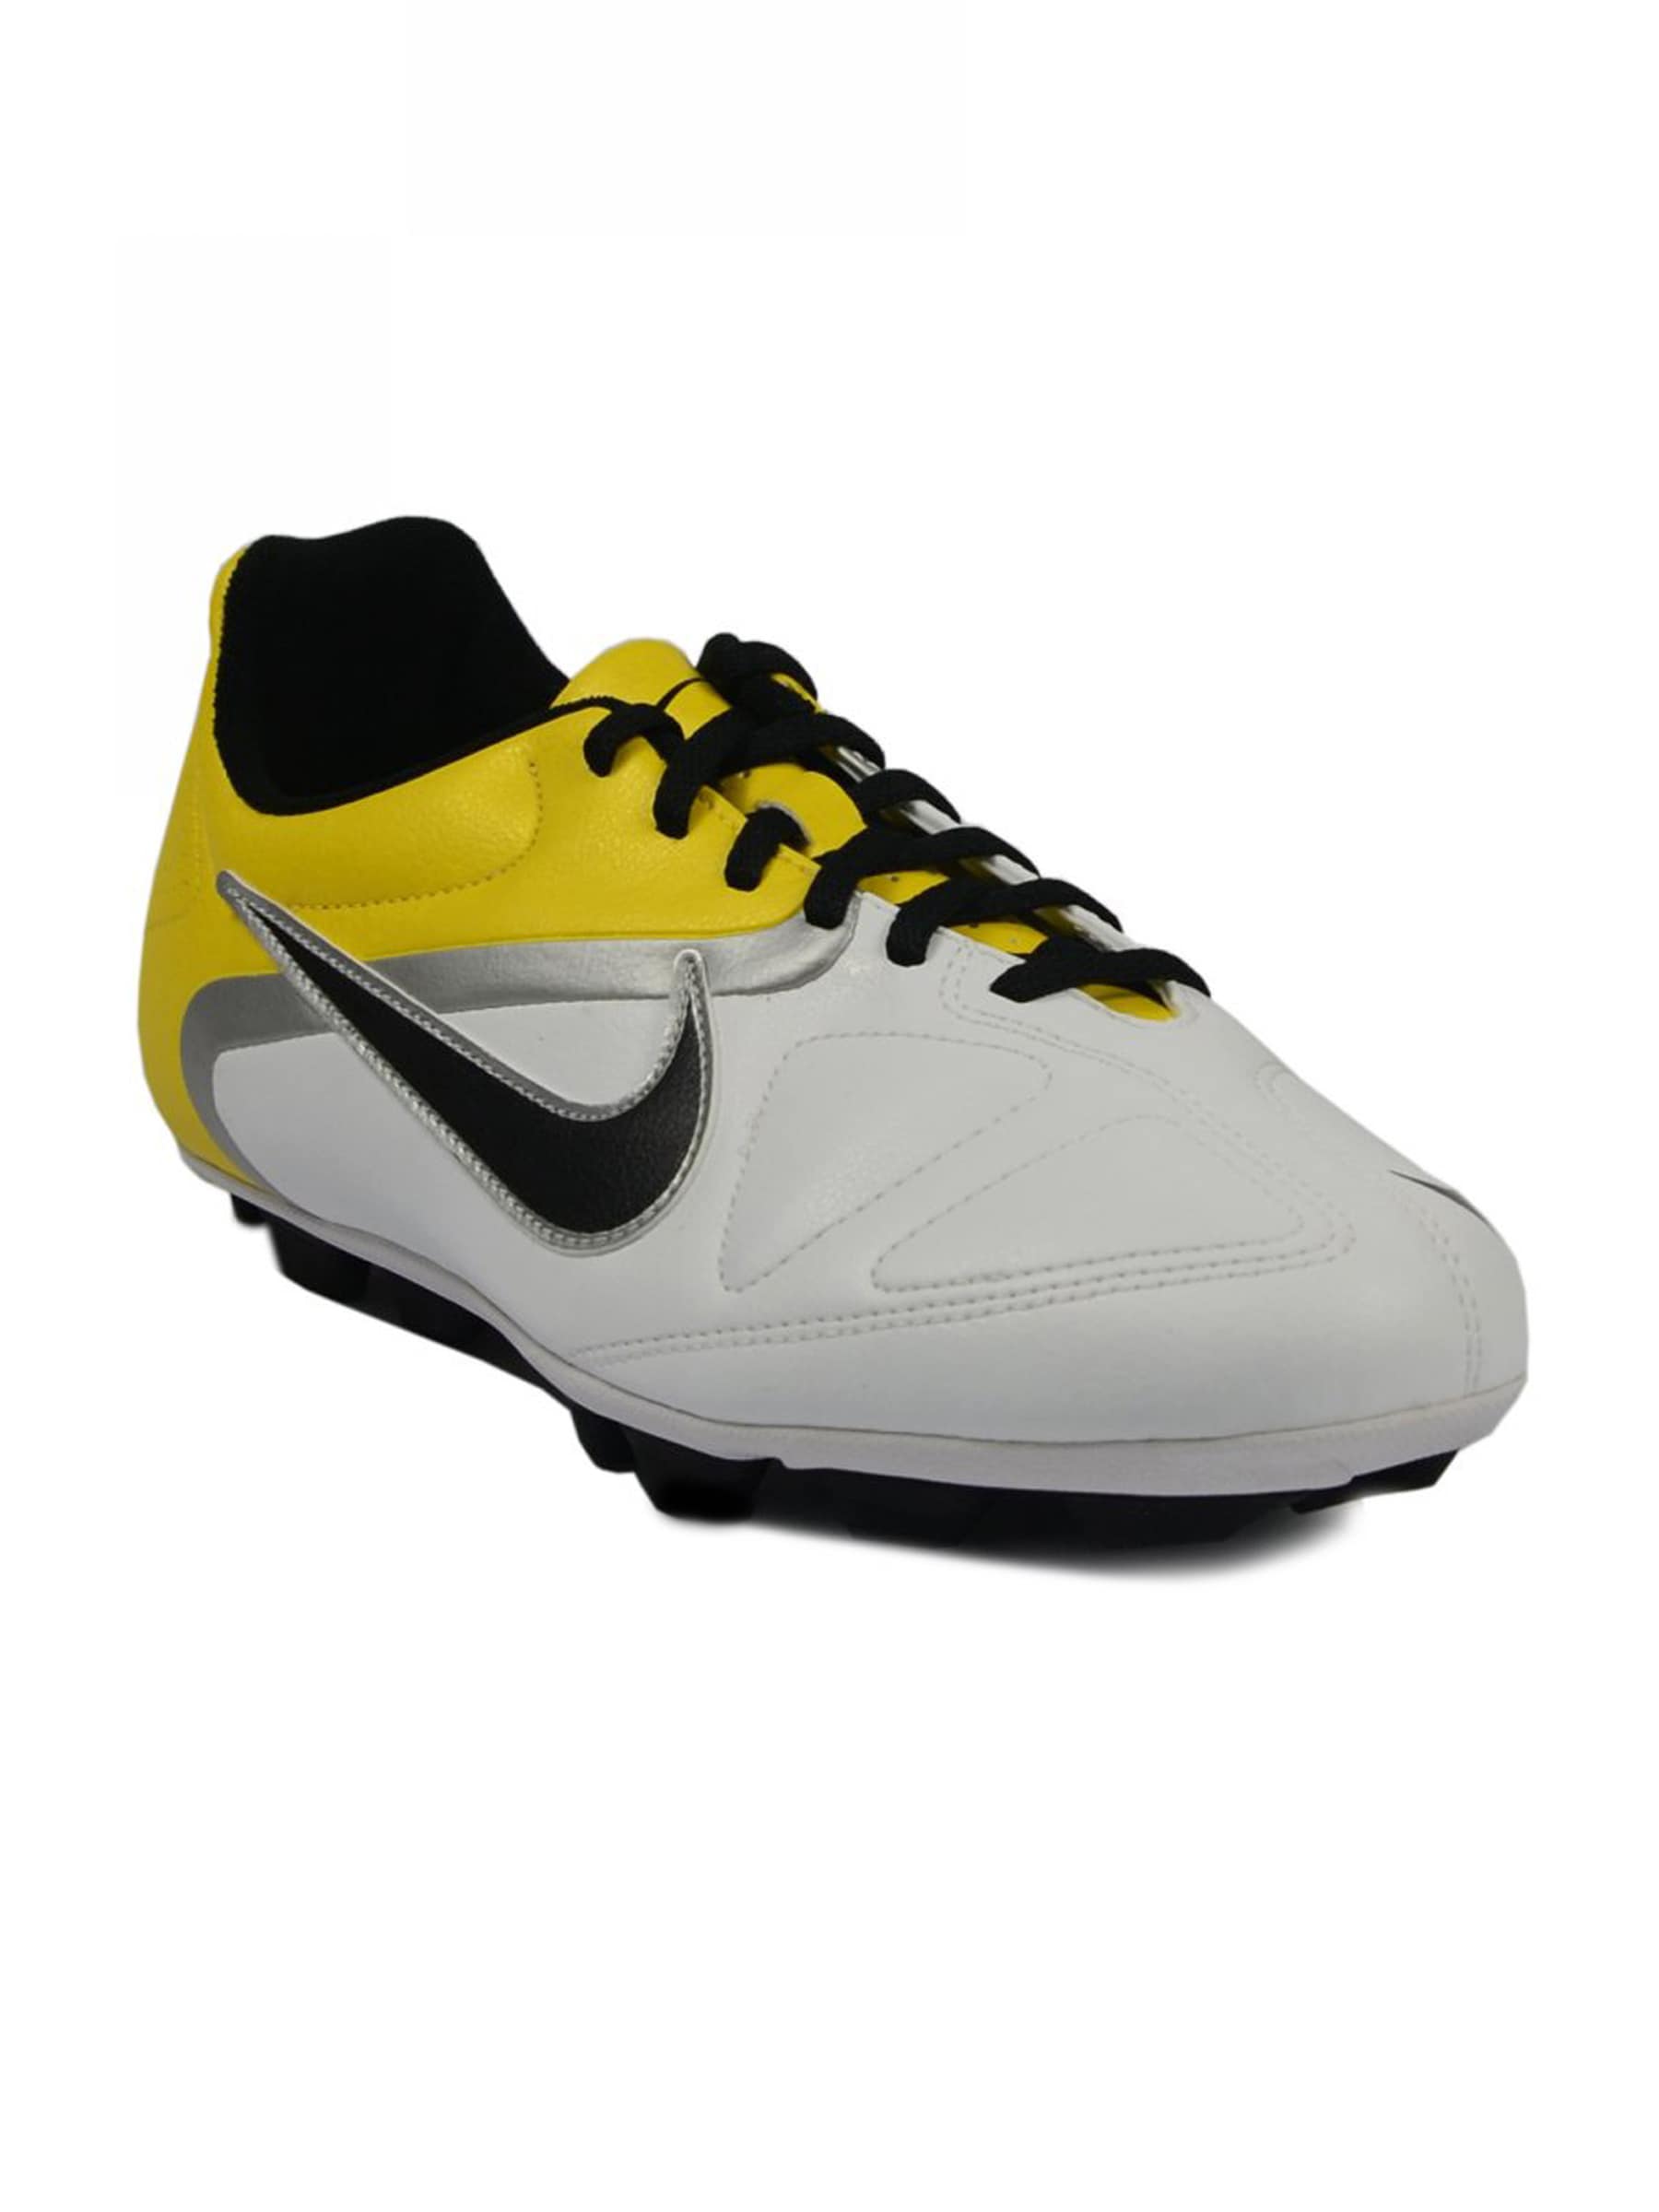 Nike Men's 360 Enganche Yellow Shoe